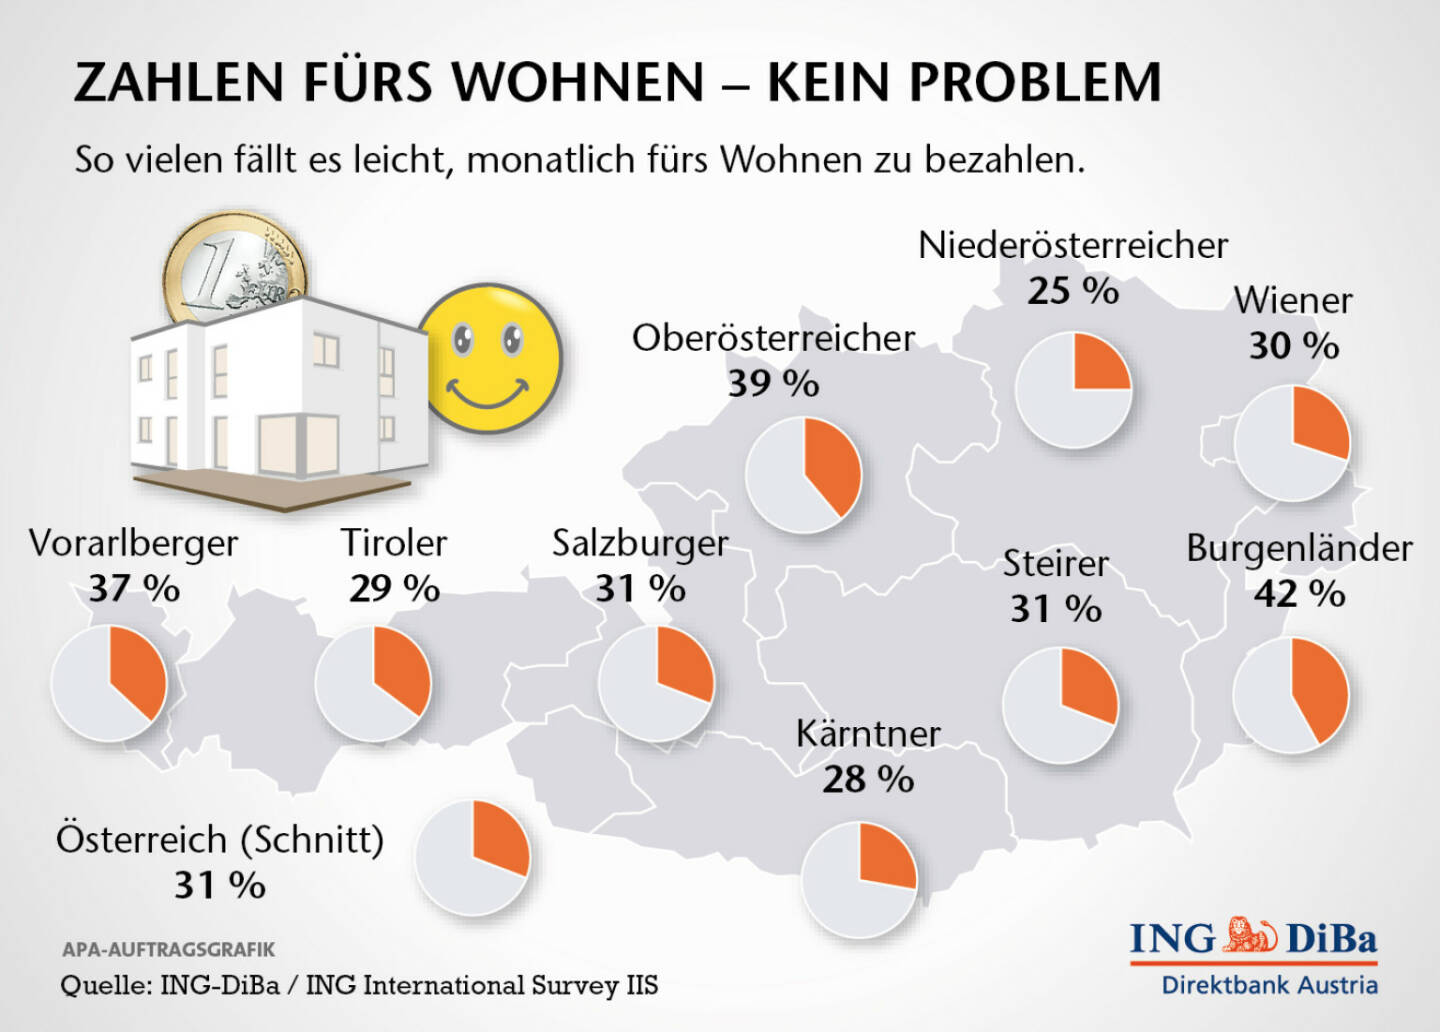 Belastung durch Wohnkosten: Jedem fünften Österreicher fällt es schwer bis sehr schwer, monatlich für das Wohnen zu bezahlen – egal, ob es sich dabei um die Miete oder die Kreditrate handelt. Besonders hart trifft es die Tiroler: Mehr als ein Drittel gibt an, dass die monatlichen Zahlungen schwer bis sehr schwer fallen. Am leichtesten tun sich die Vorarlberger: Nur 5% sind von Zahlungsproblemen betroffen (c) ING-DiBa